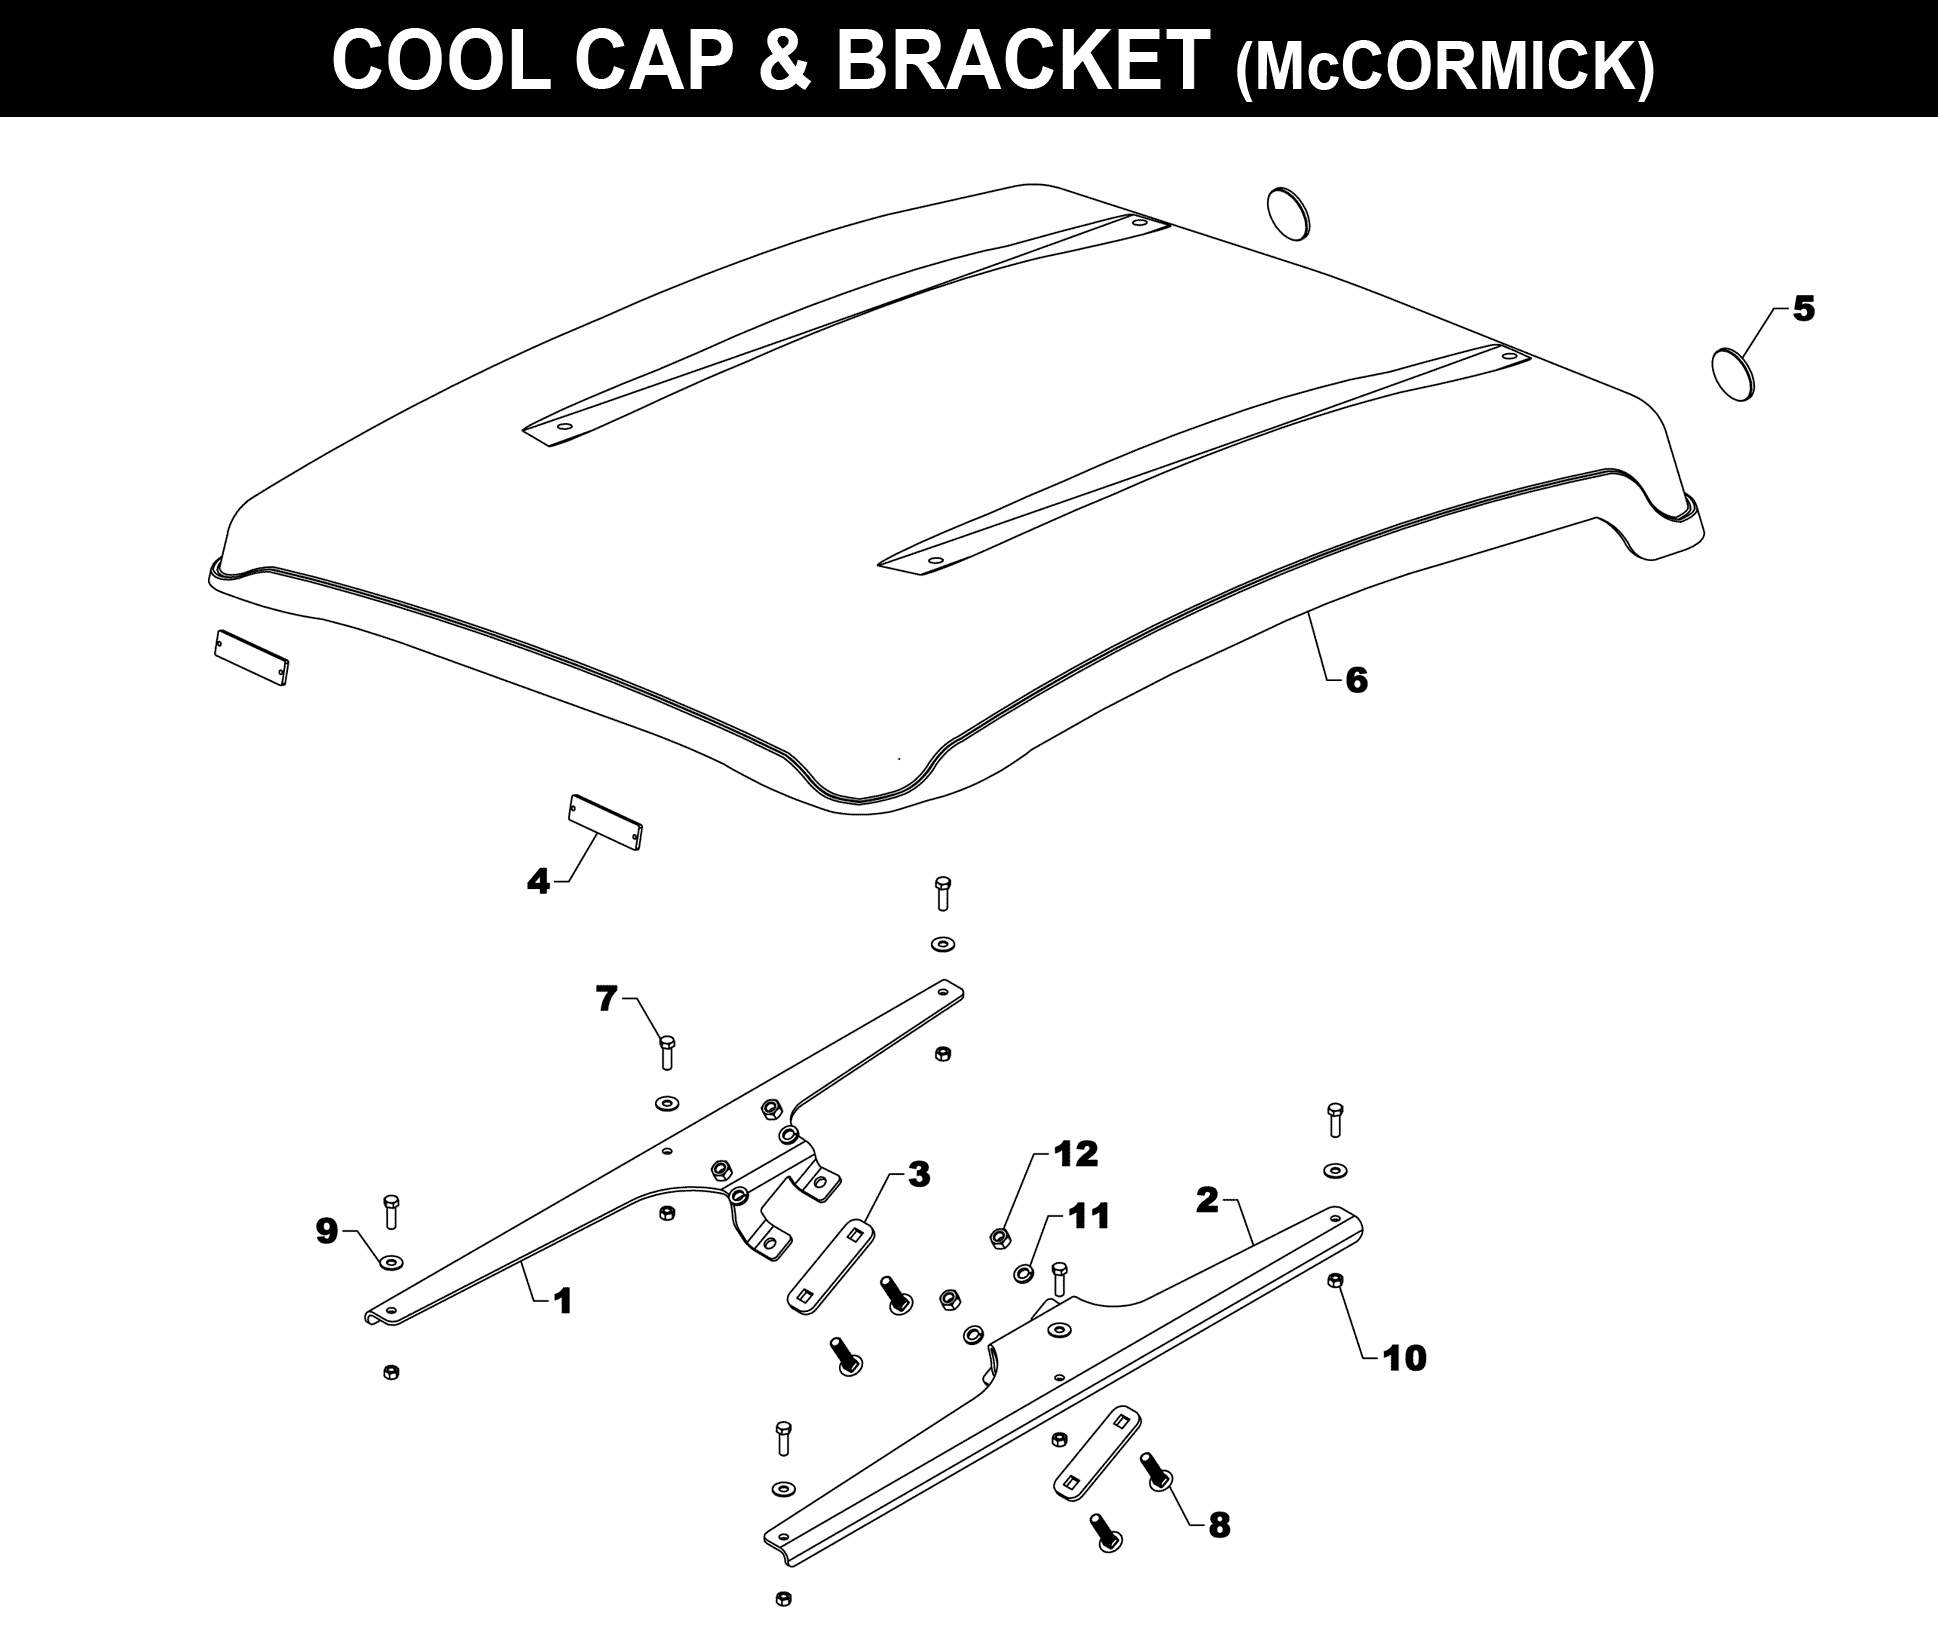 Cool Cap (McCormick)